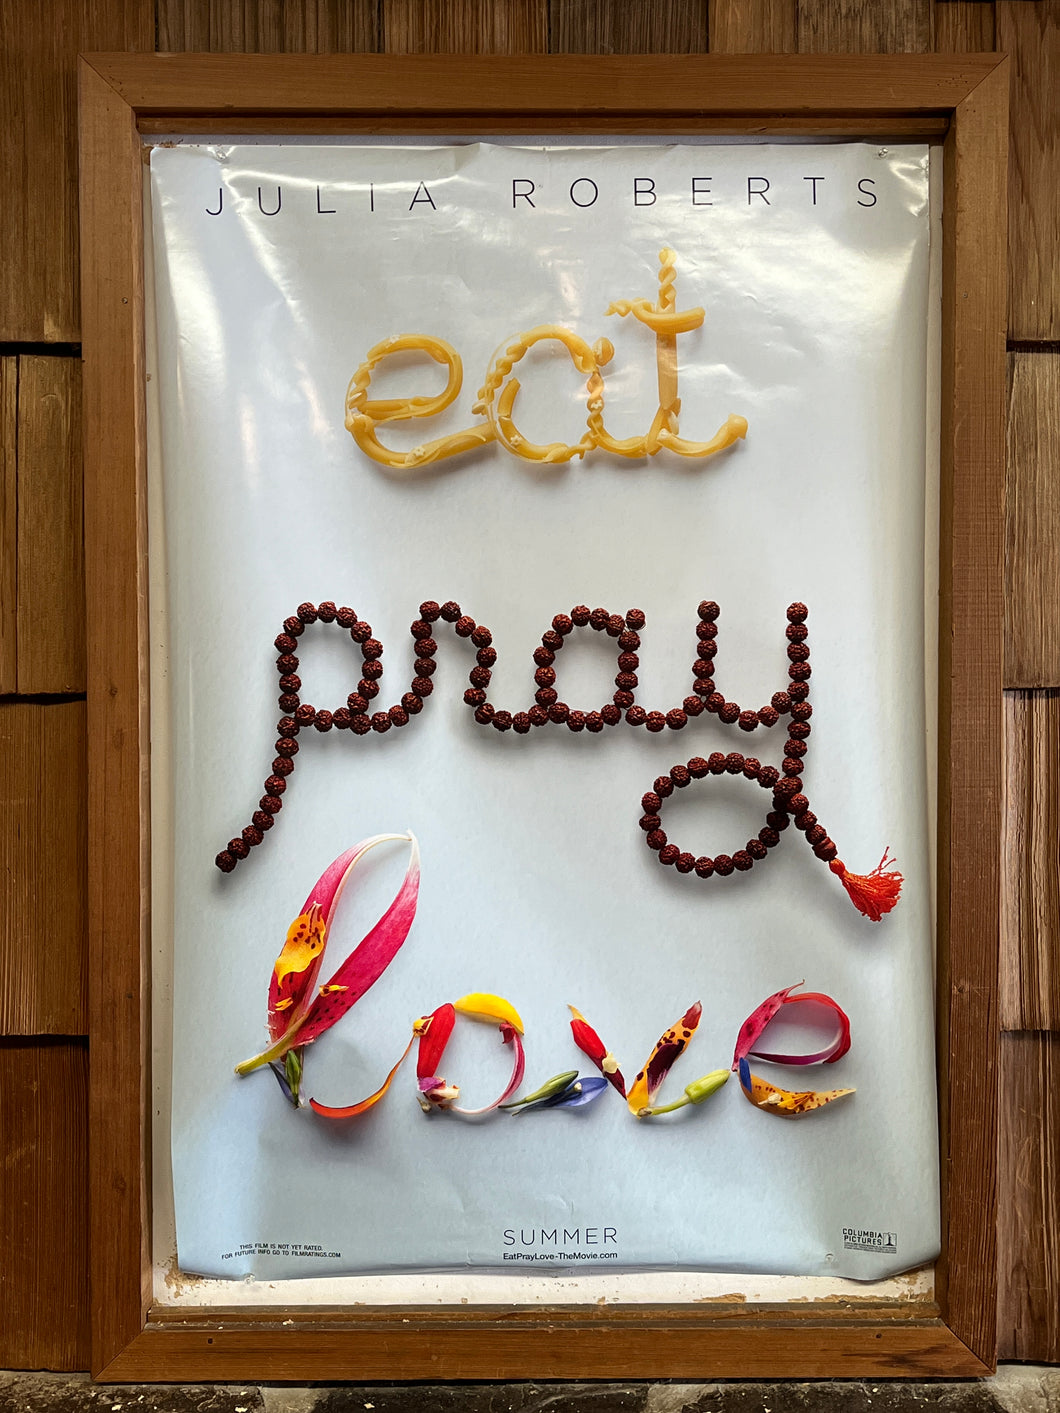 Eat Pray Love (2010)